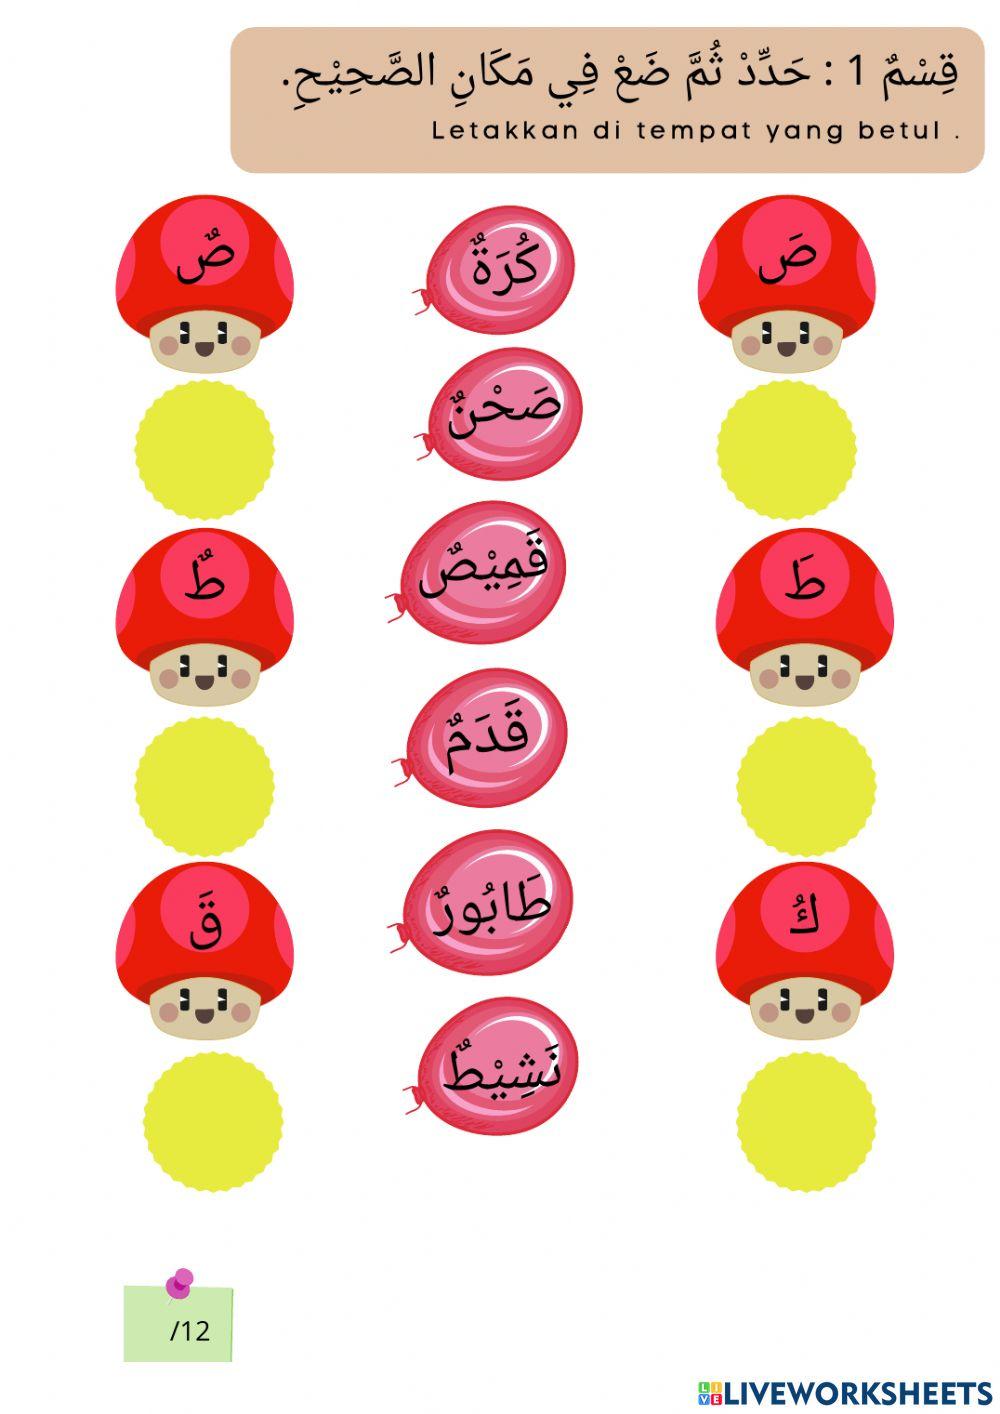 Pentaksiran sumatif bahasa arab tahun 5 bab 3